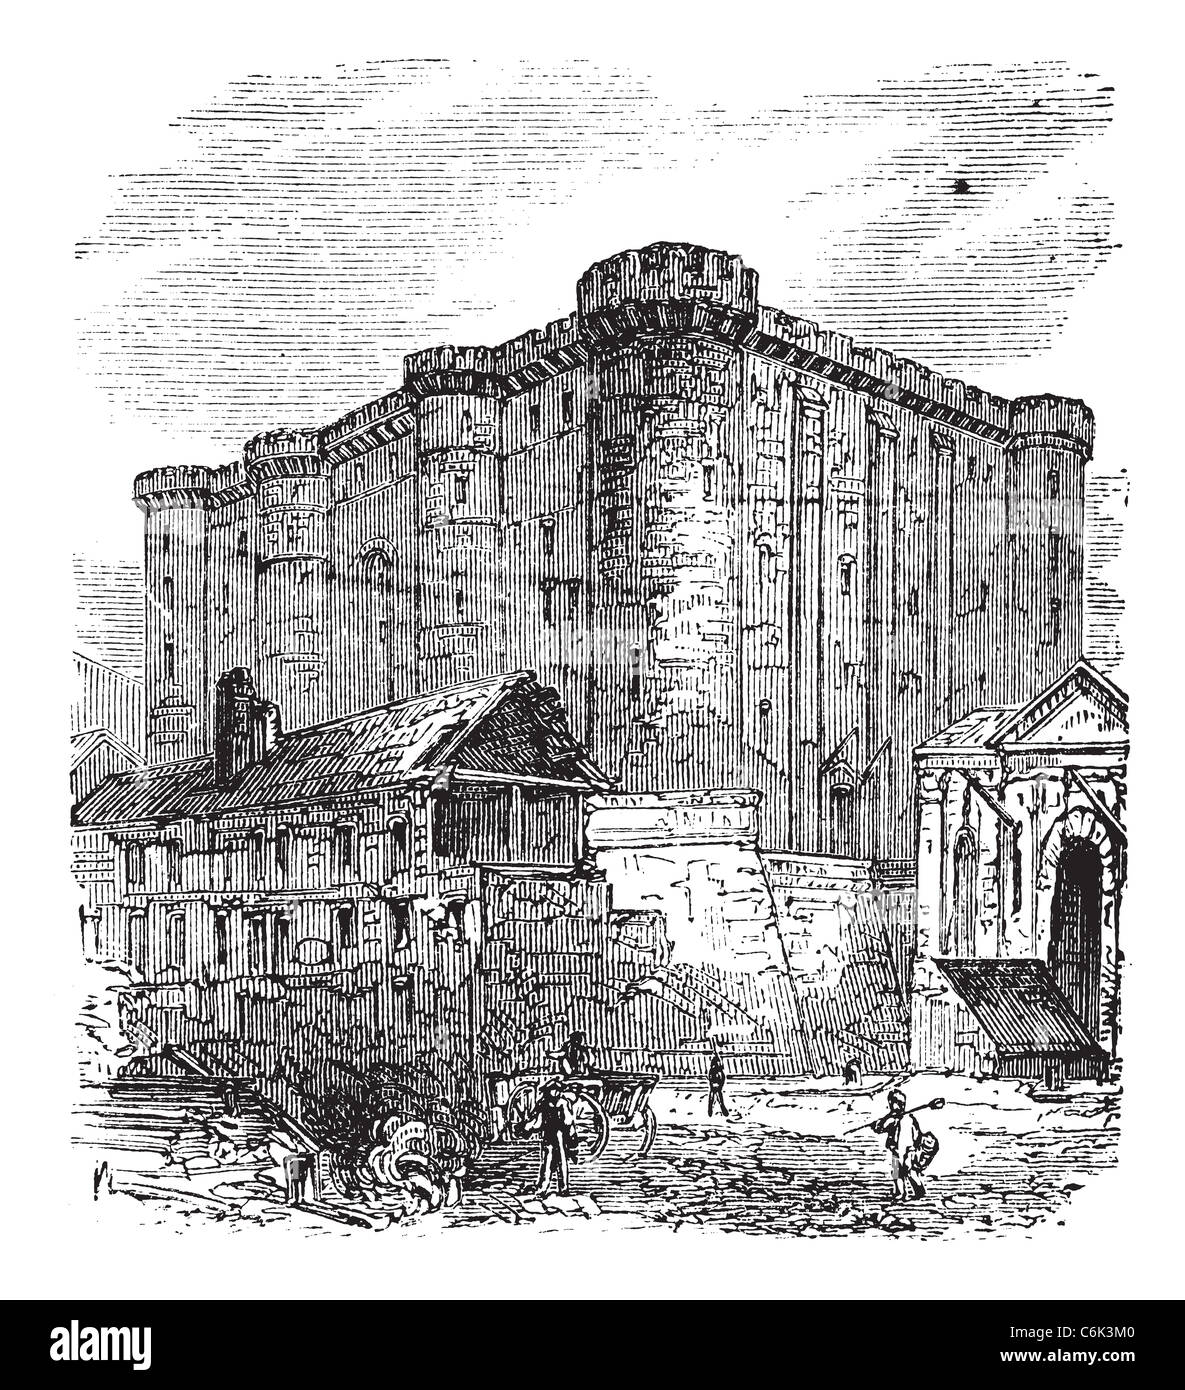 Bastille Saint-Antoine in Parigi, Francia. Incisione vintage. Vecchie illustrazioni incise della fortezza francese-prigione nel 1890. Foto Stock